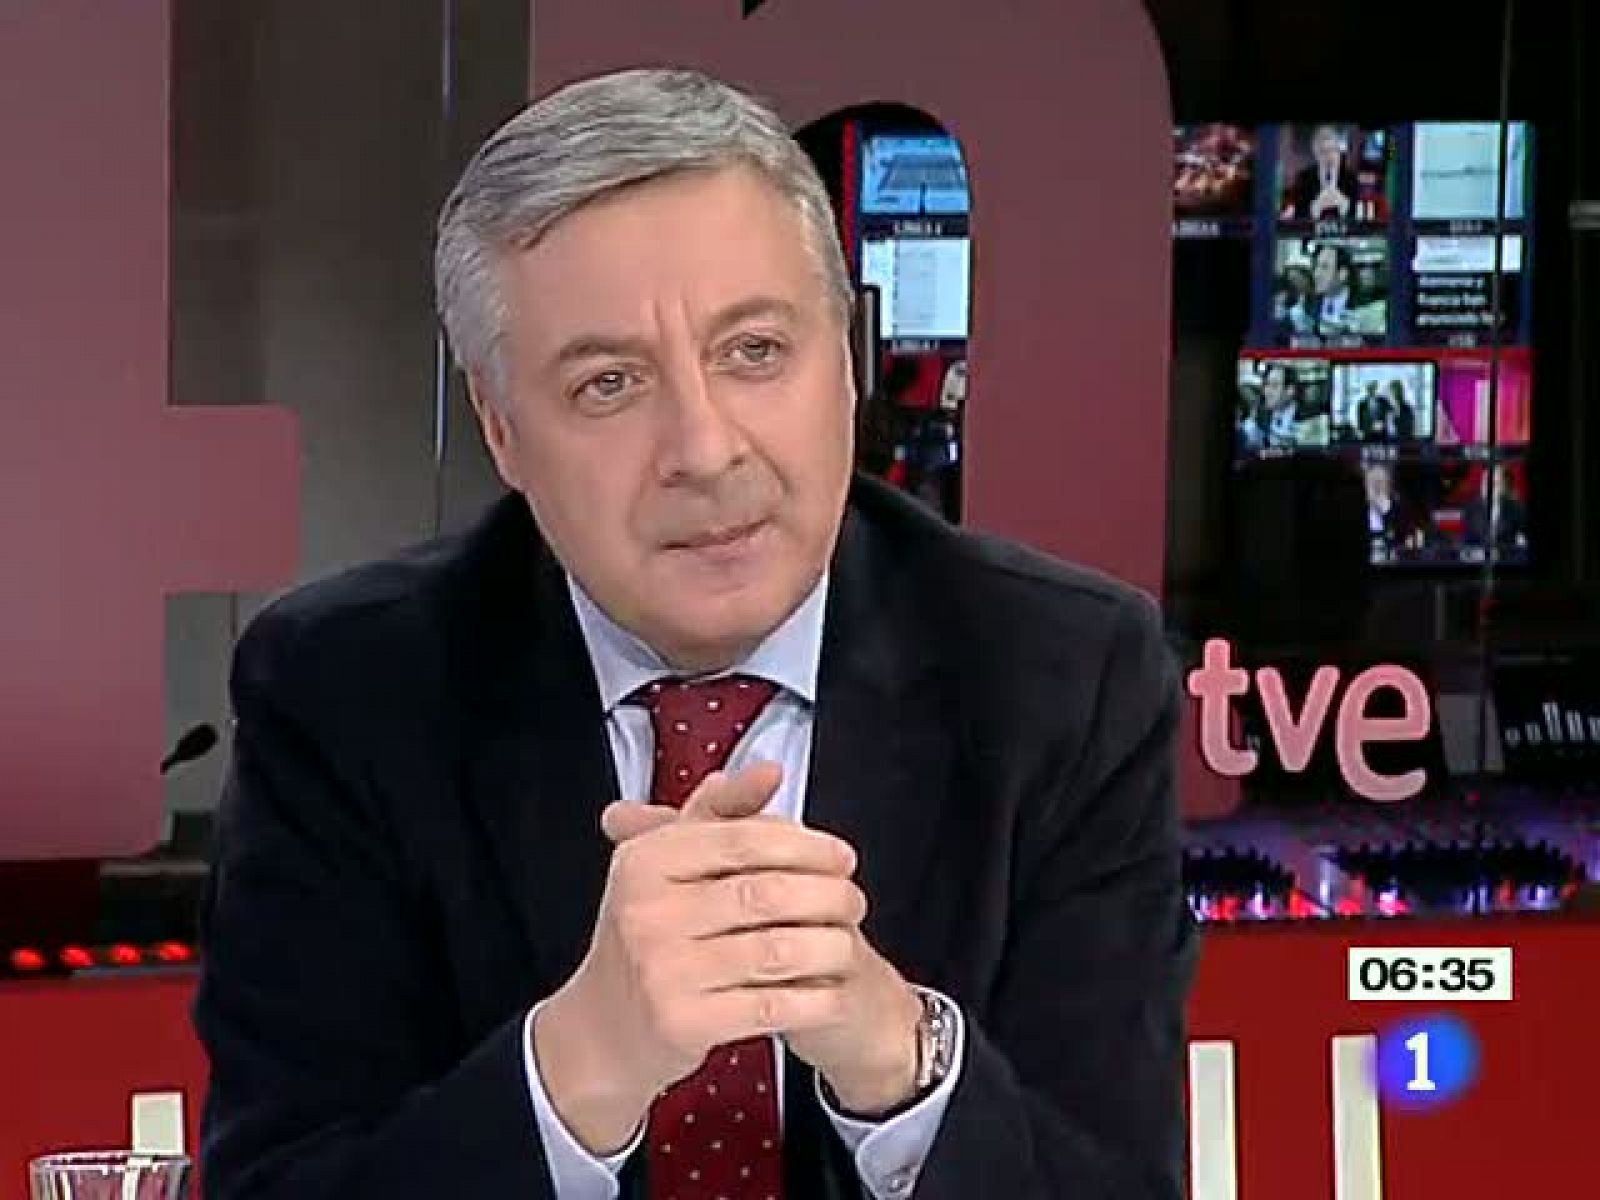 El portavoz del Gobierno en funciones, José Blanco, anuncia en TVE que se retira de la primera línea política